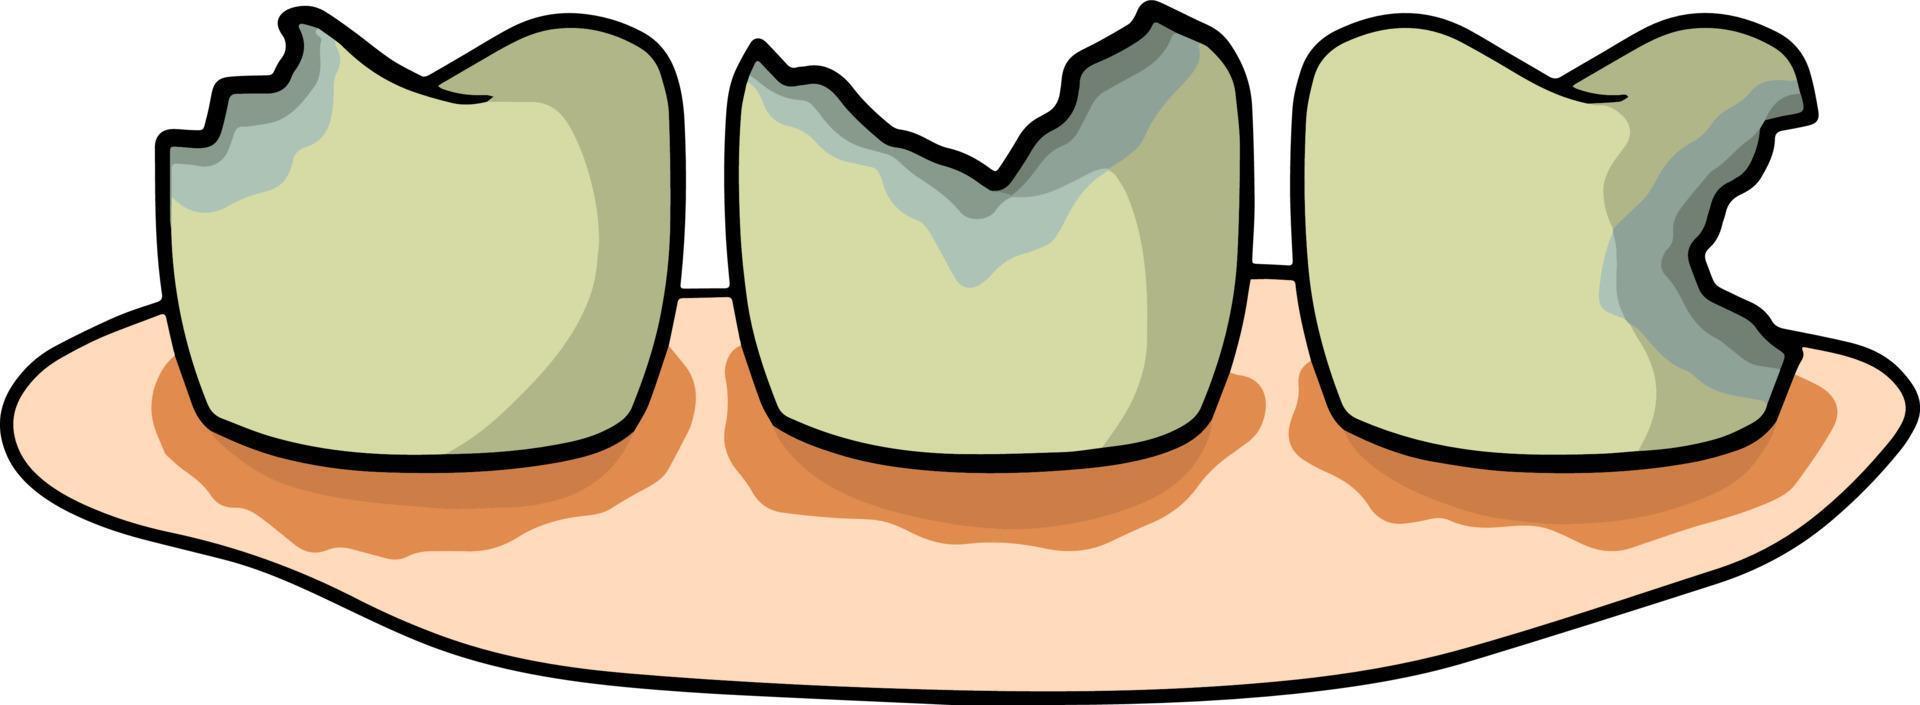 karies och tandproblem. tandvård och sjukt smutsiga tänder med fläckar. munhygien. Sjukvård. gingivit. behovet av städning. karies. tecknad illustration vektor